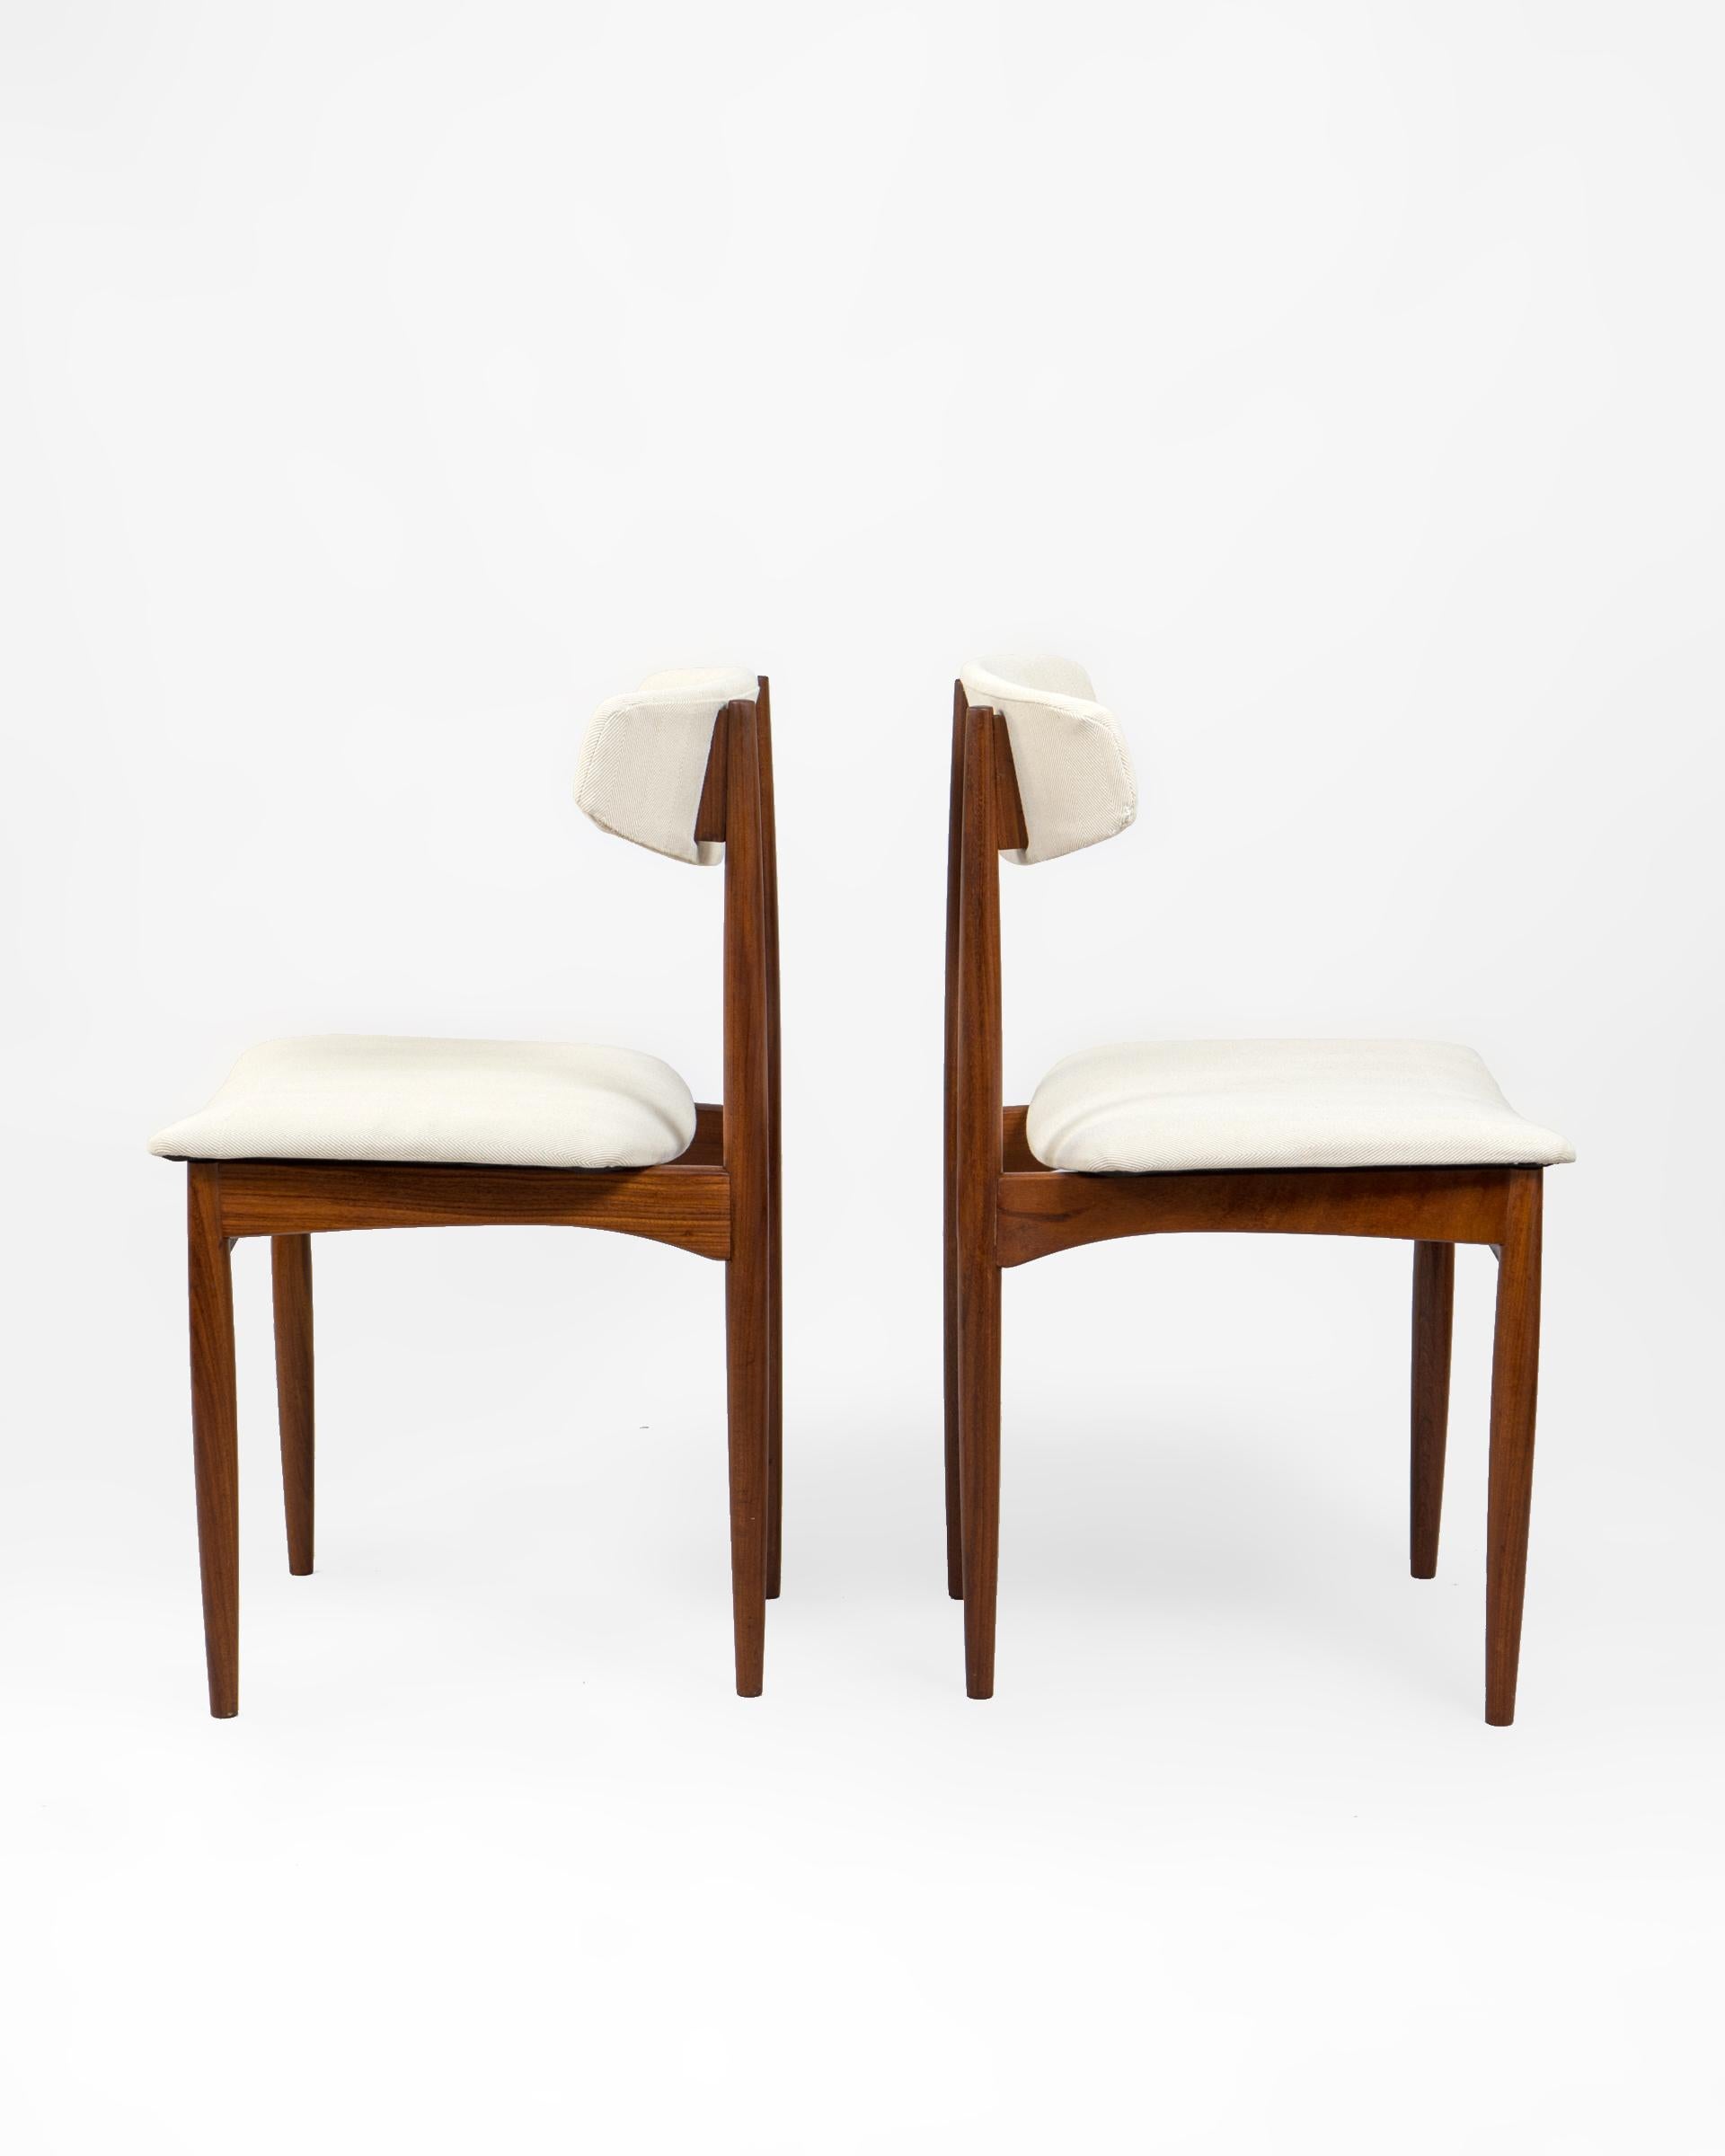 Conjunto de dos sillas danesas en madera afrormosia. Excelente y confortable diseño con respaldo en forma de boomerang y amplio asiento. Se han re tapizado en tejido de algodón de espiga beige fabricado en España en telar tradicional.

El torneado